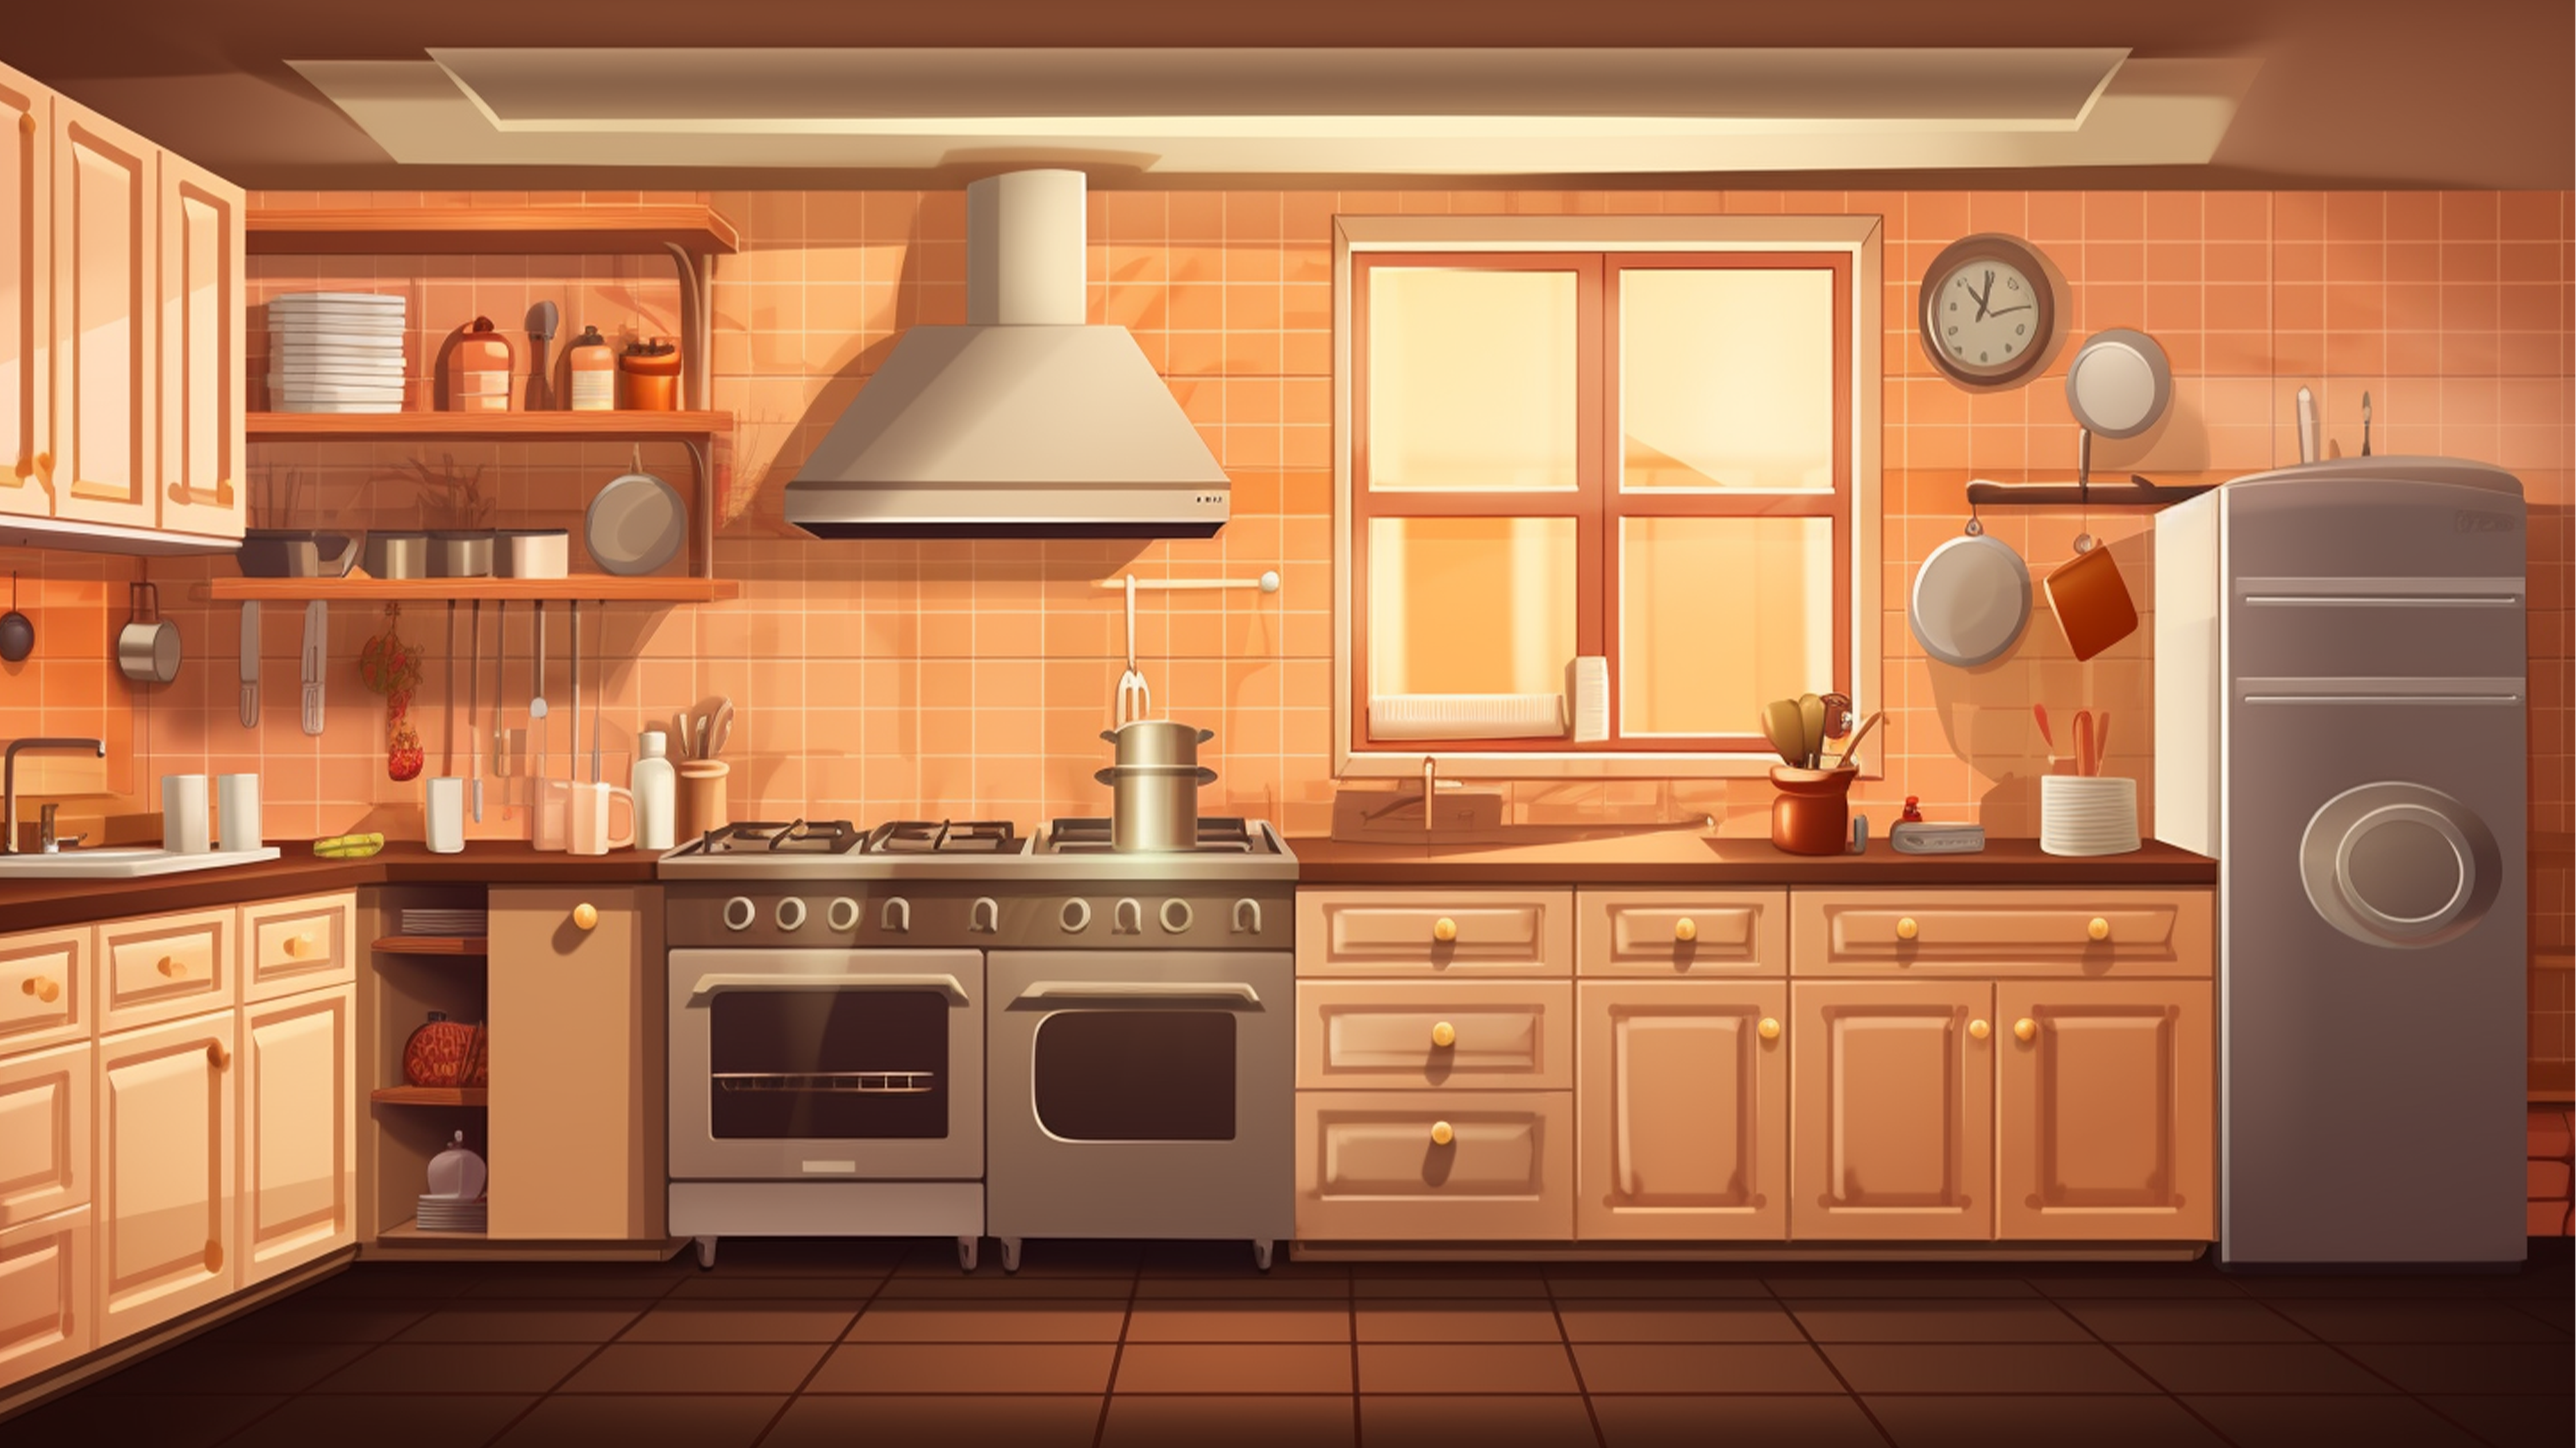 厨房橱柜冰箱暖色卡通背景图片